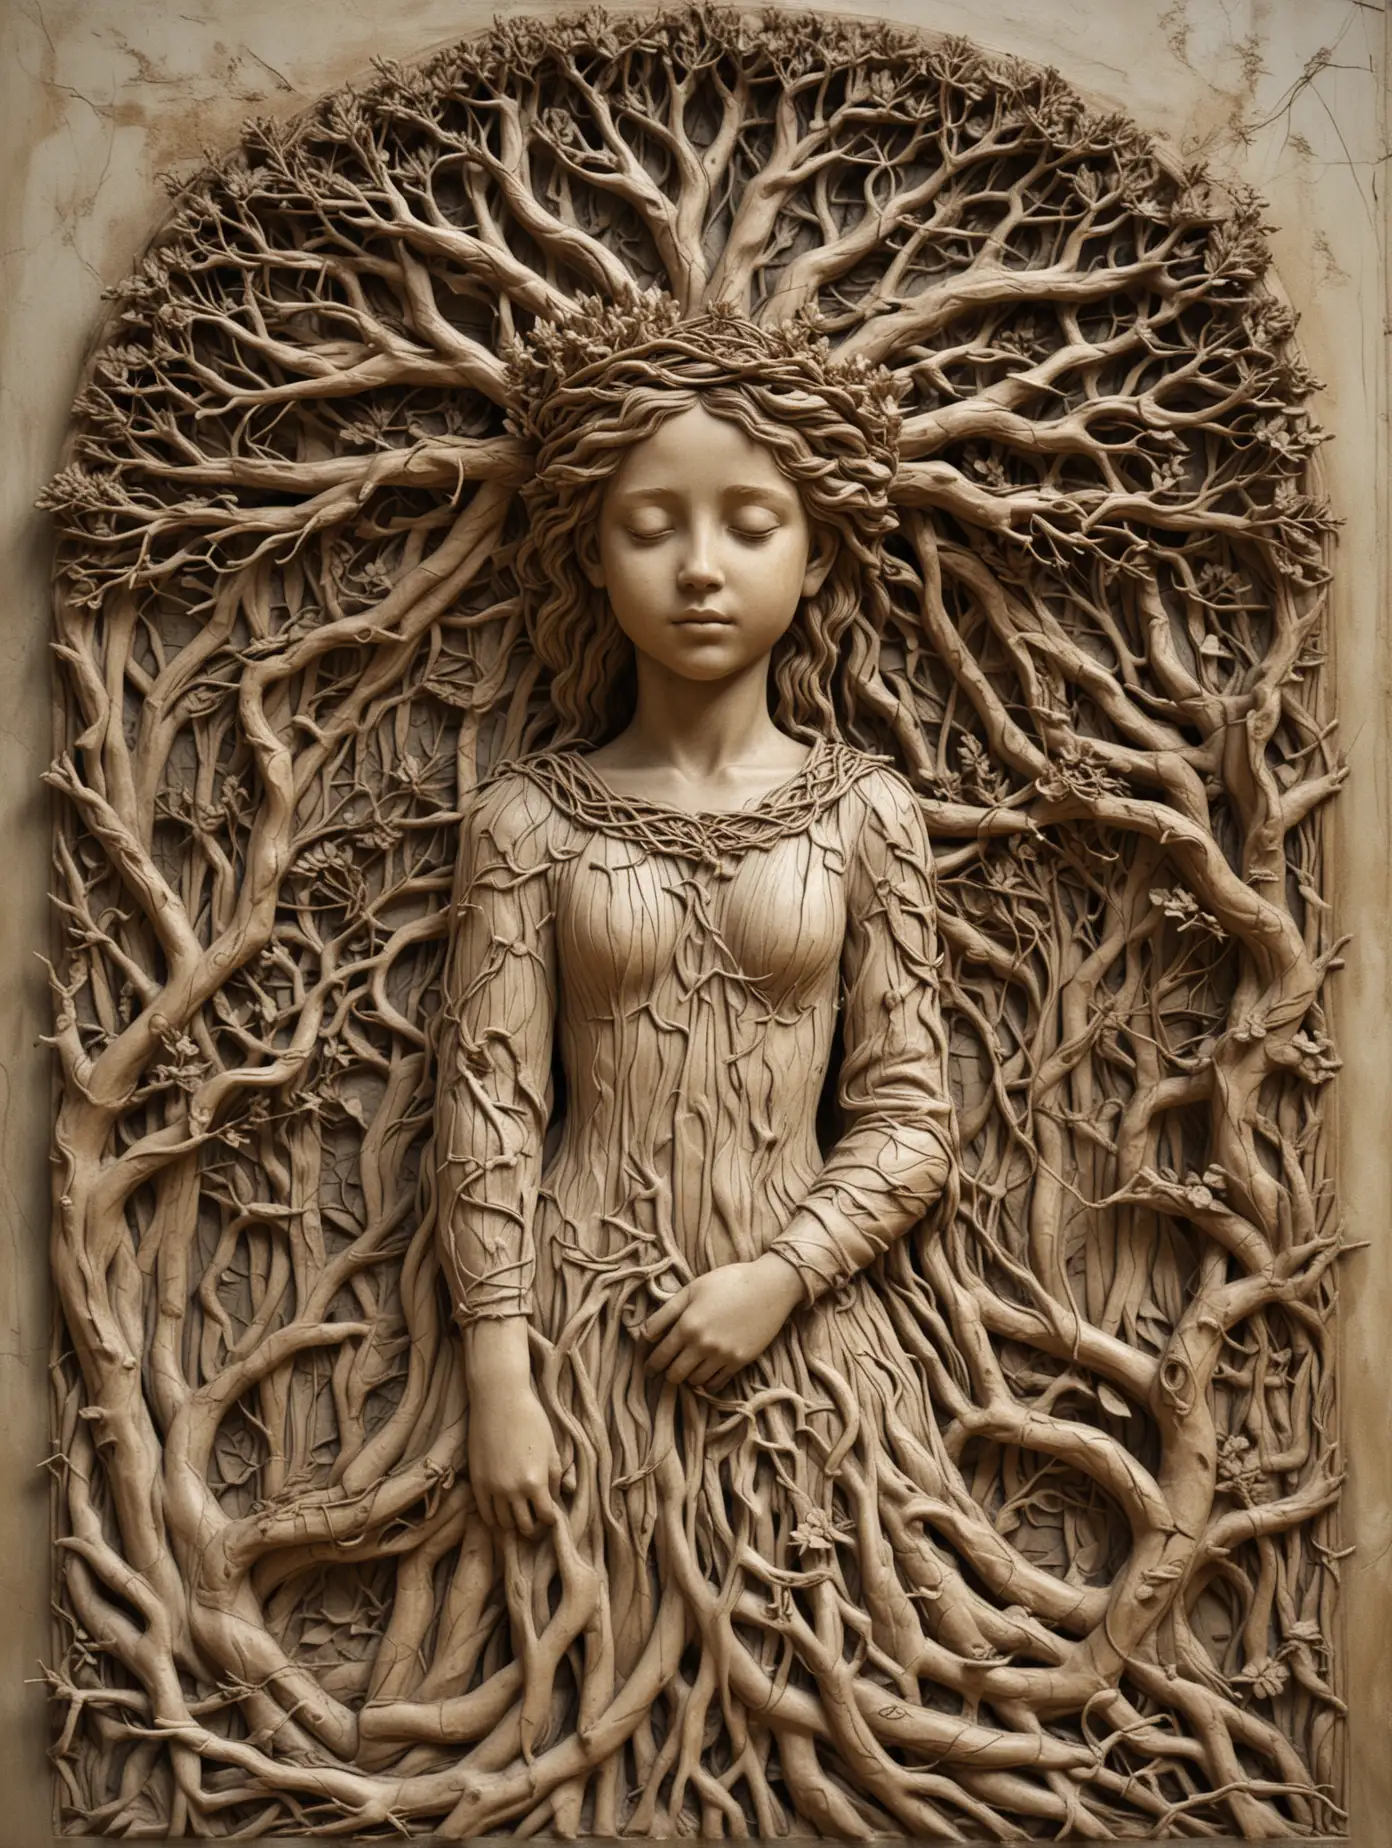 барельеф образ девушки в  кроне дерева с переплетением веток и корней 